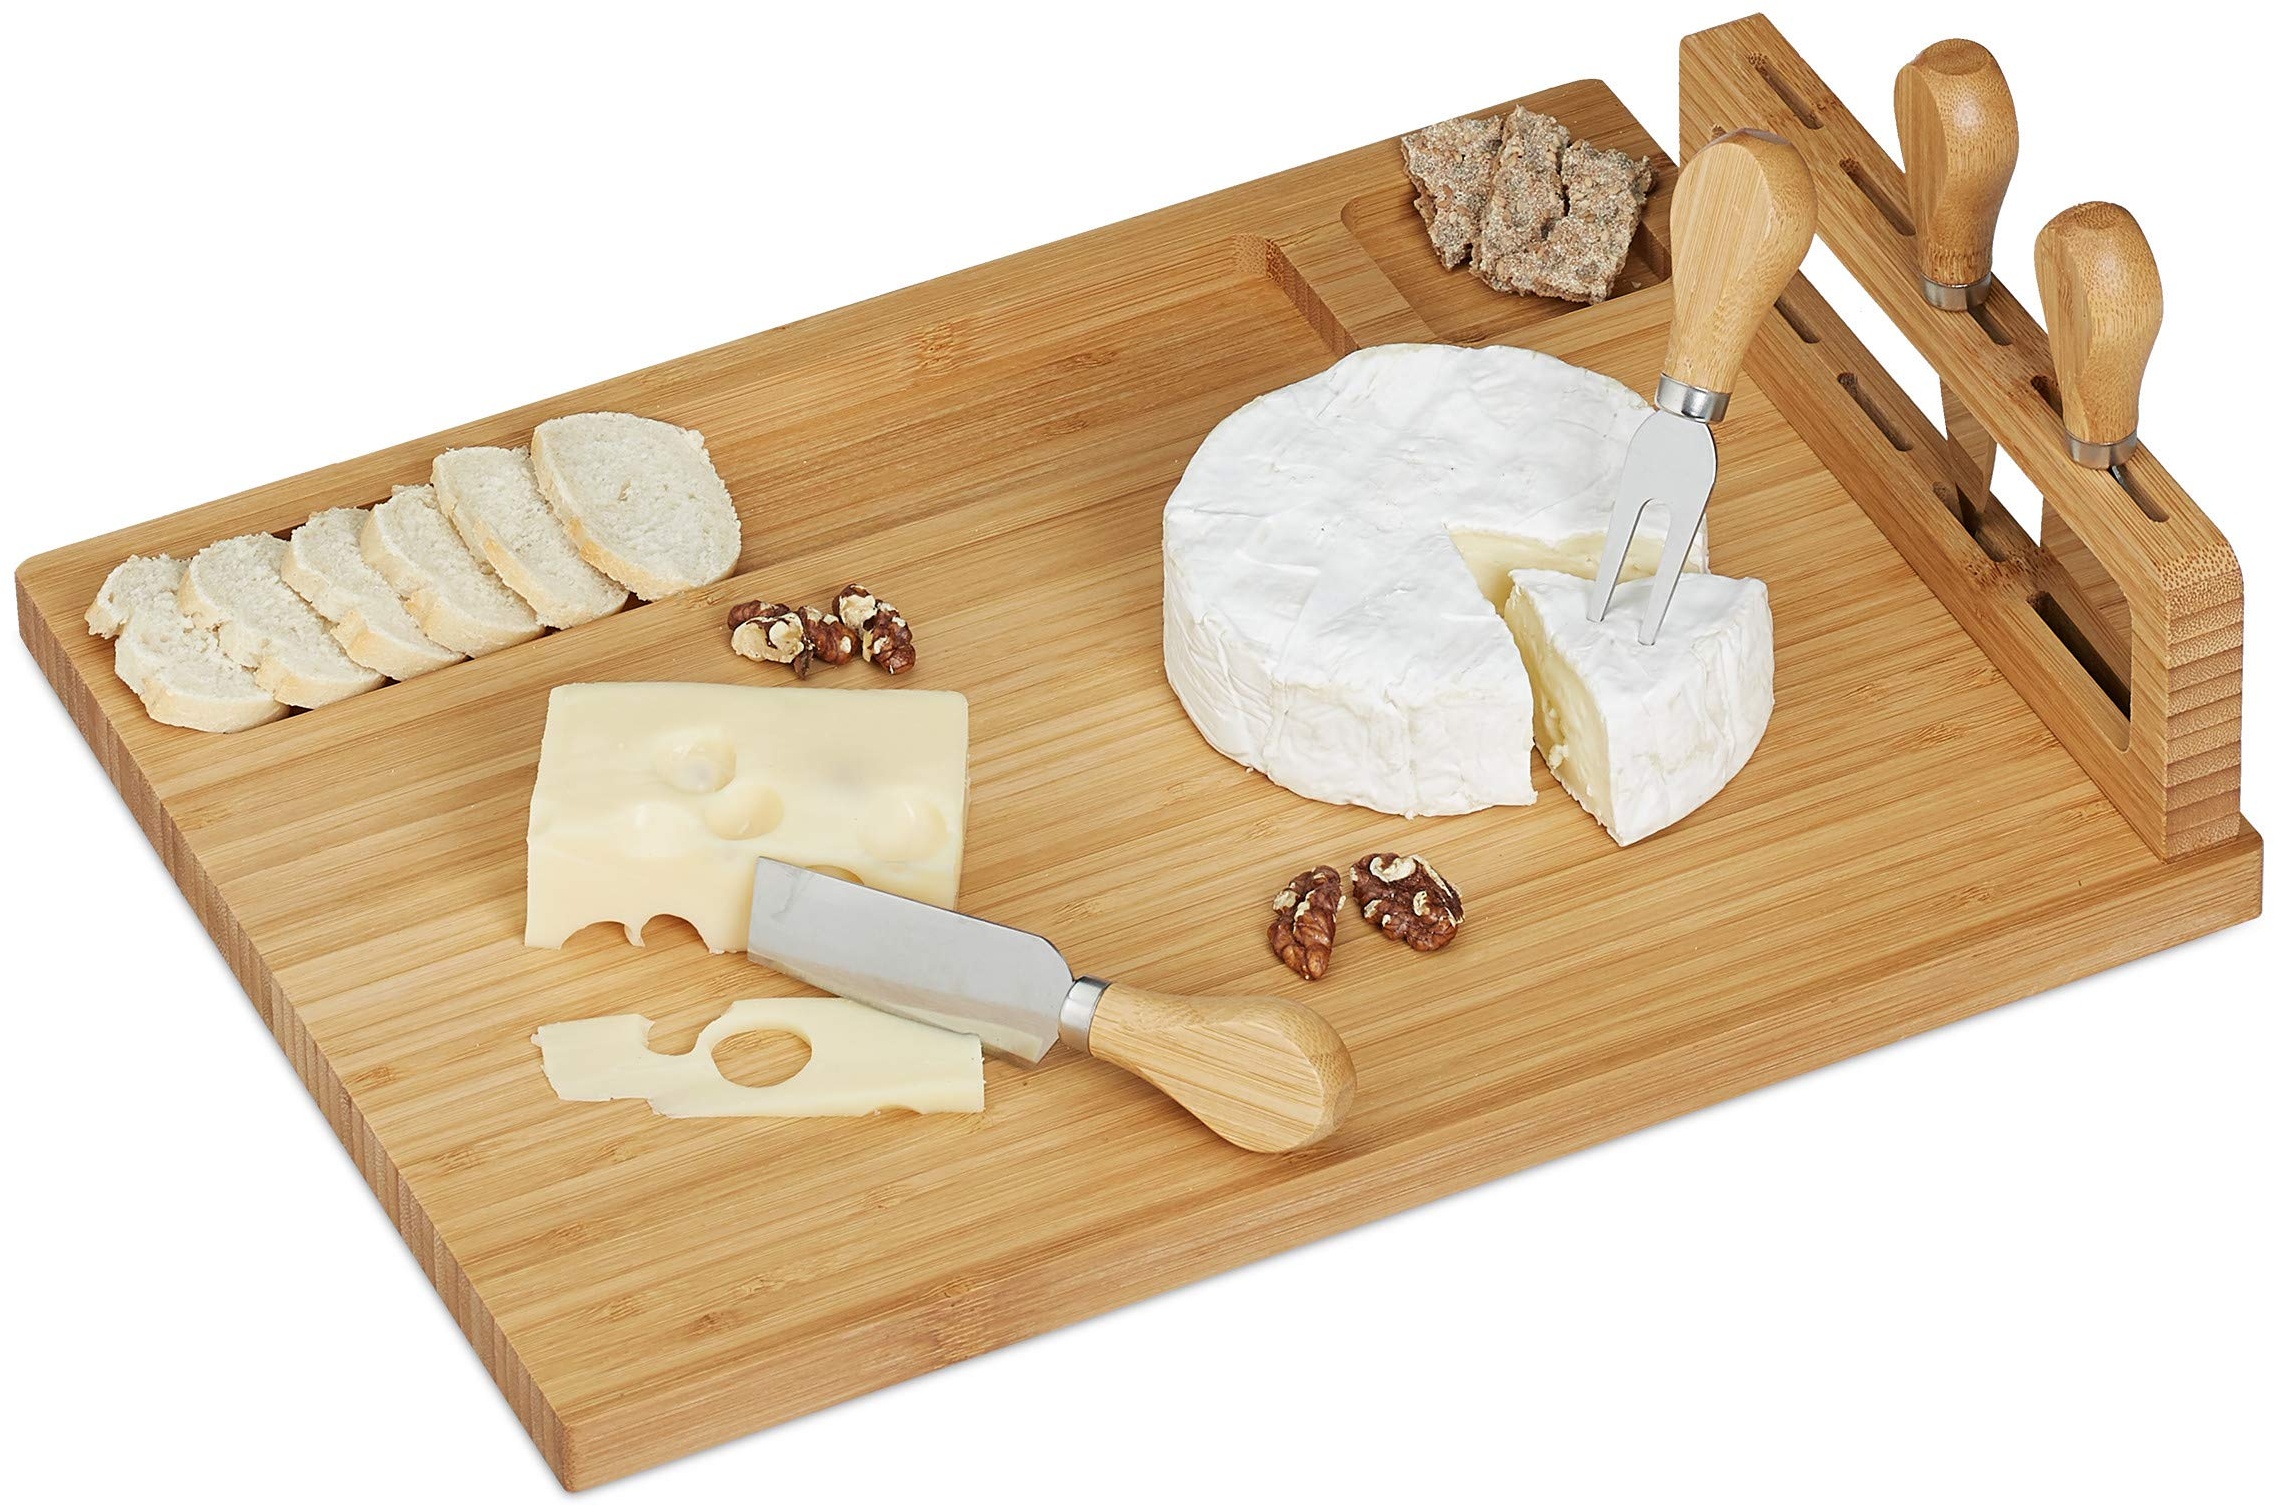 relaxdays 10028826 Käsebrett mit Besteck, Käseplatte mit Käsegabel und-Messer aus Edelstahl, Bambus Käsescheidenbrett, Natur